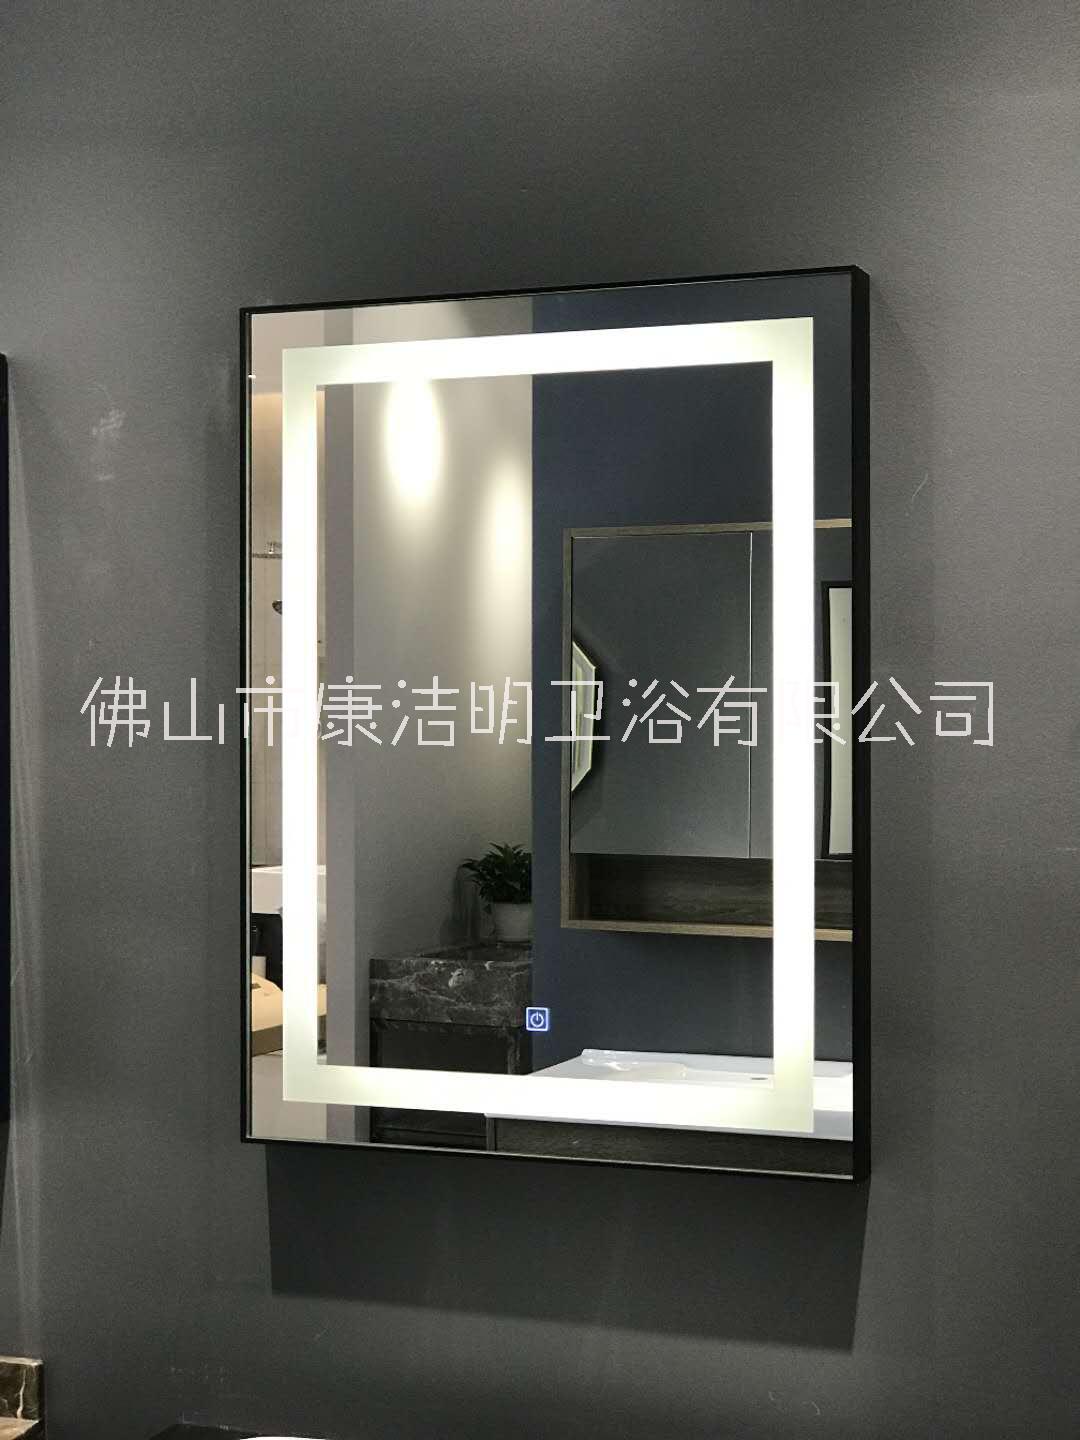 白光浴室镜厂家销售*广州白光浴室镜子批发